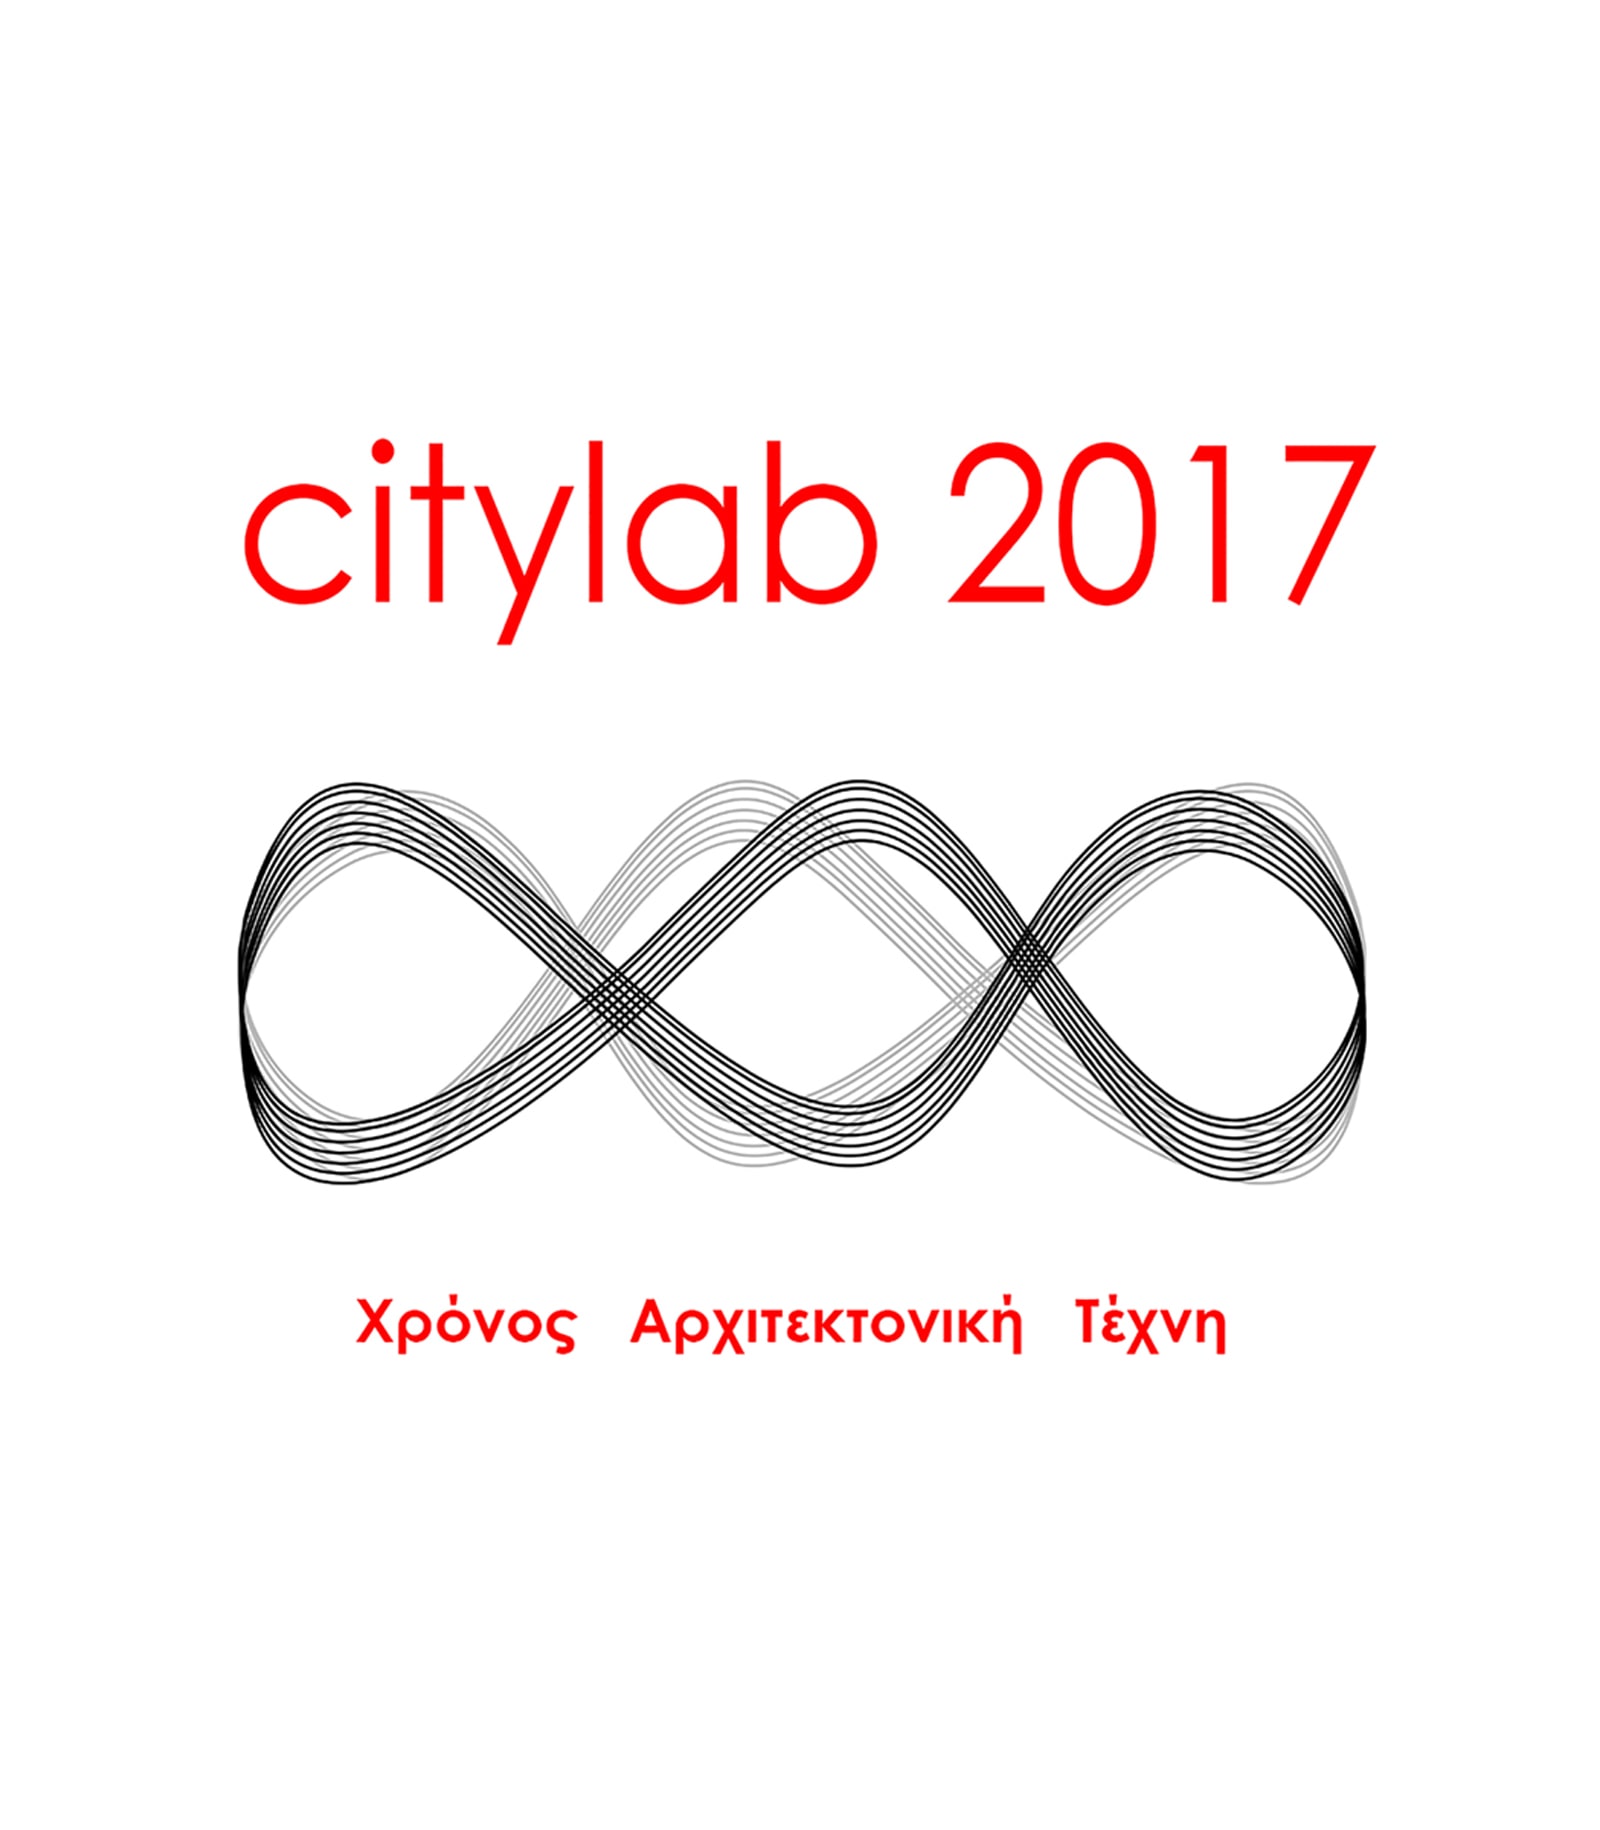 Archisearch Citylab 2017 ΧΡΟΝΟΣ ΑΡΧΙΤΕΚΤΟΝΙΚΗ ΤΕΧΝΗ